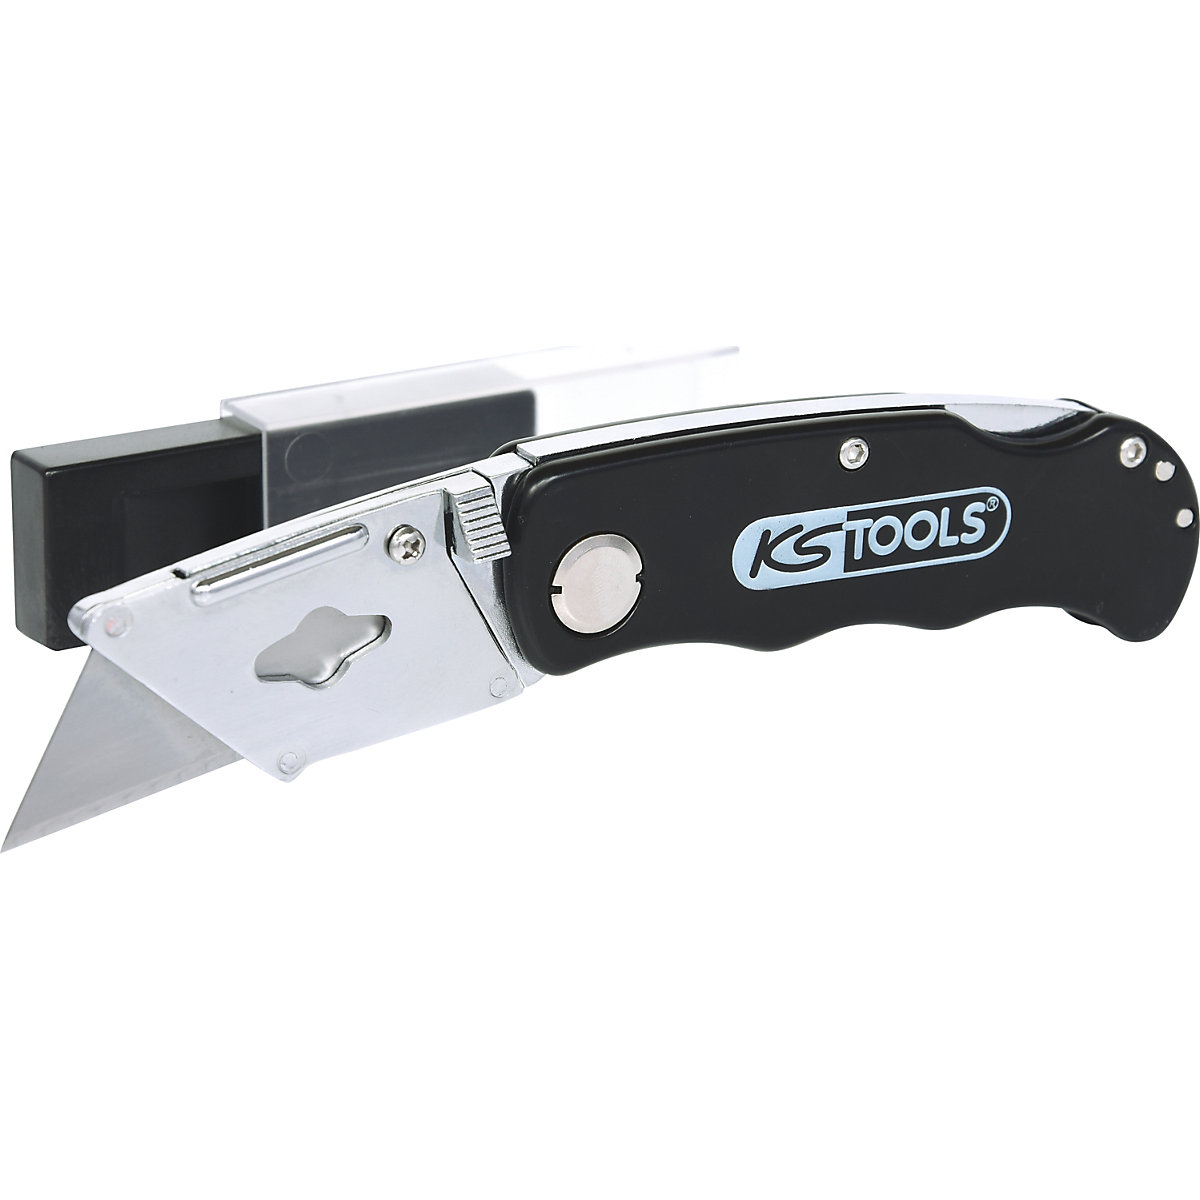 Folding knife - KS Tools